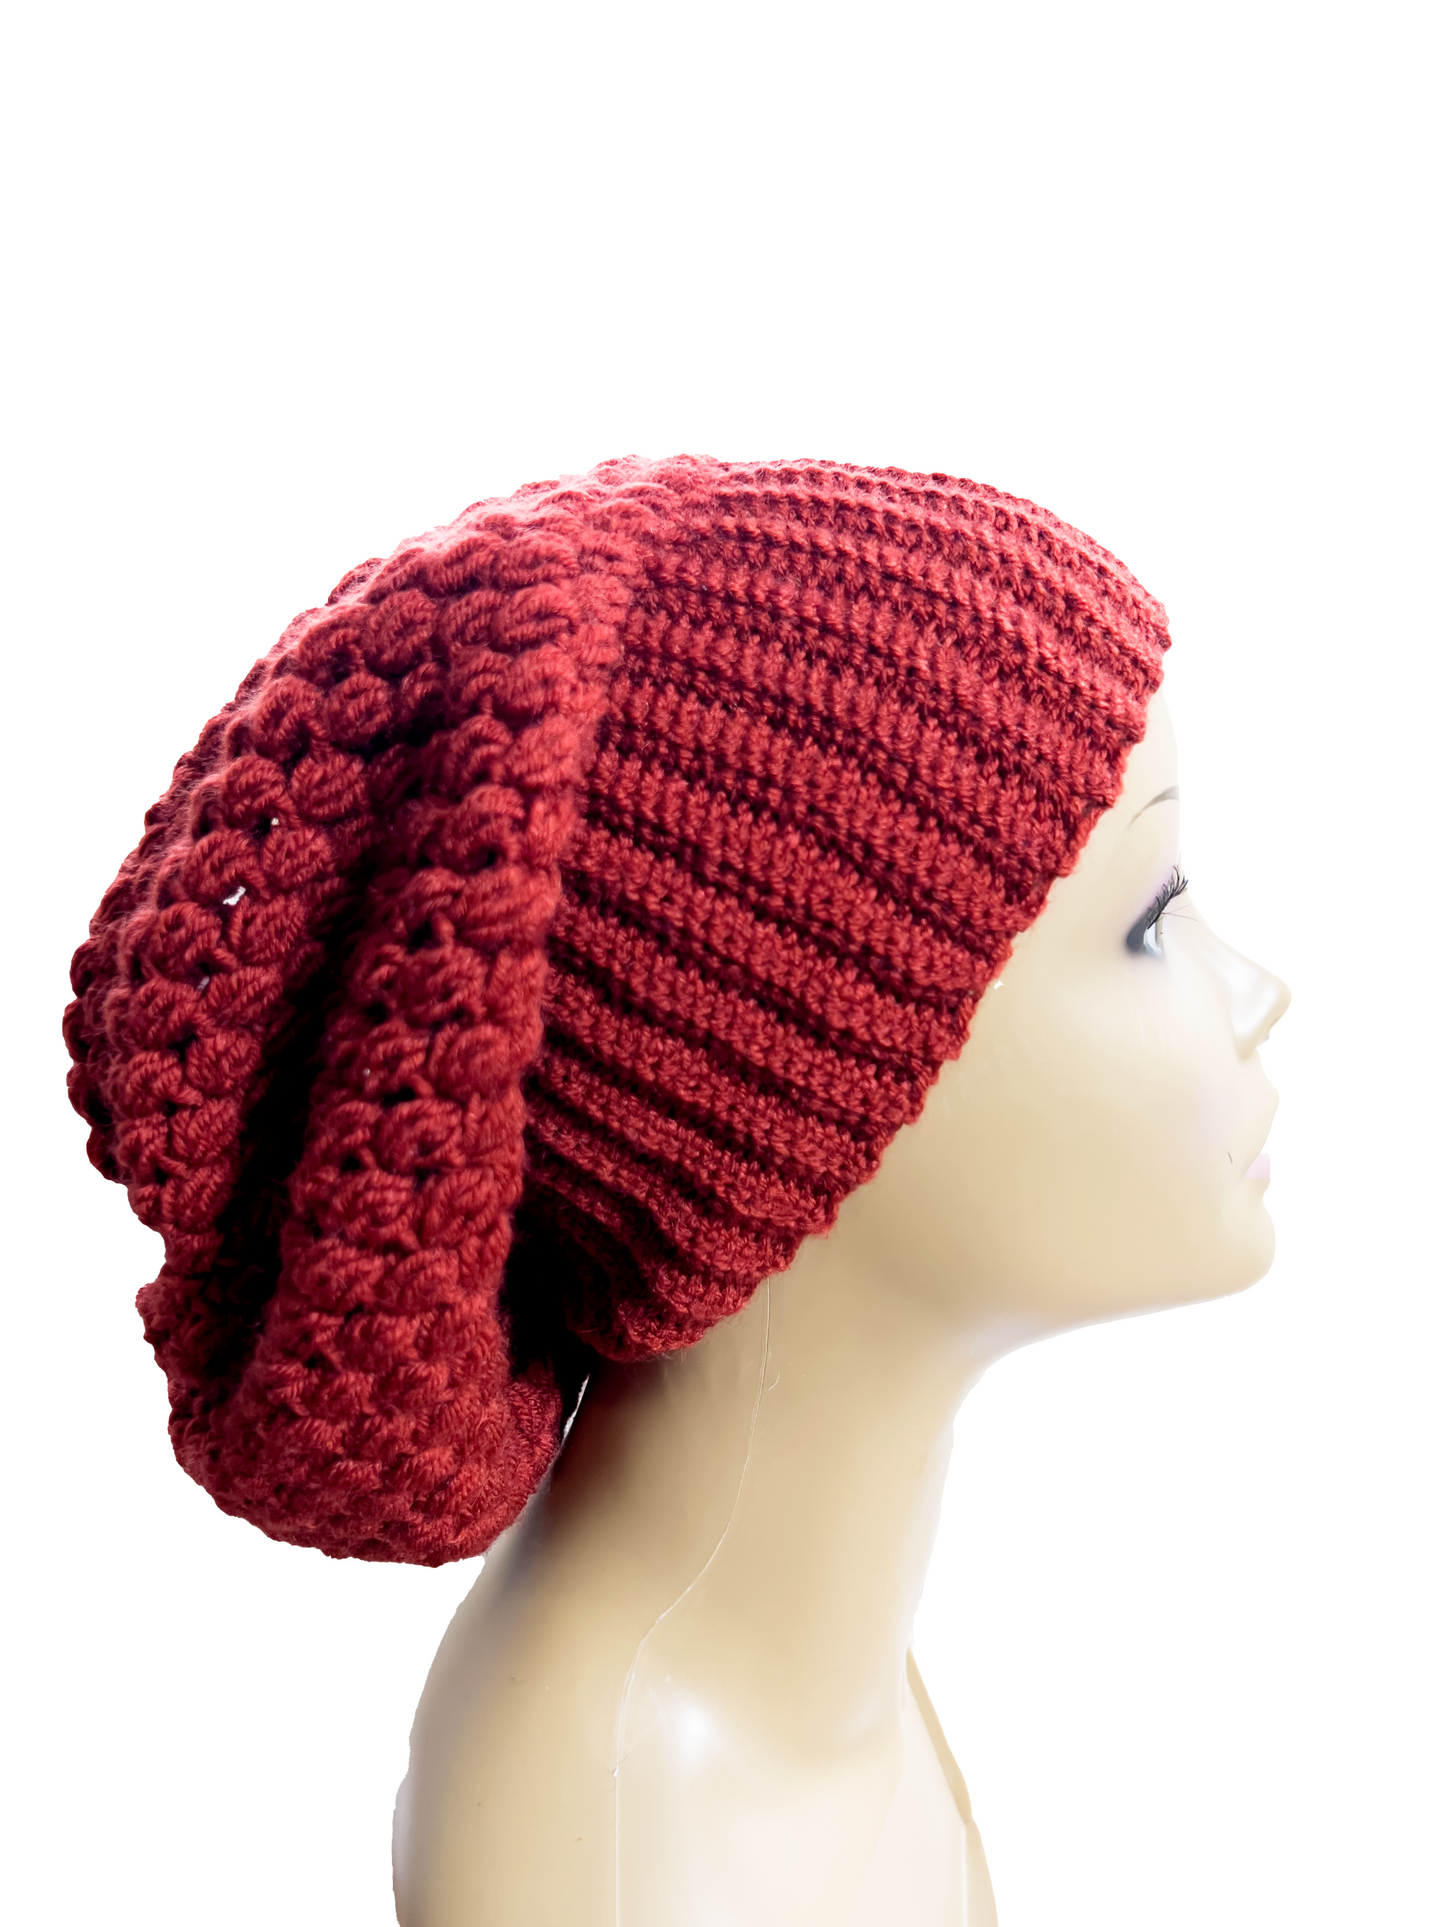 Crochet Womens Hat, Womens Hats, Hats Women, Hats, Crochet Women Hats, Crochet Hat, crochet hat women, winter hats women, crochet hats